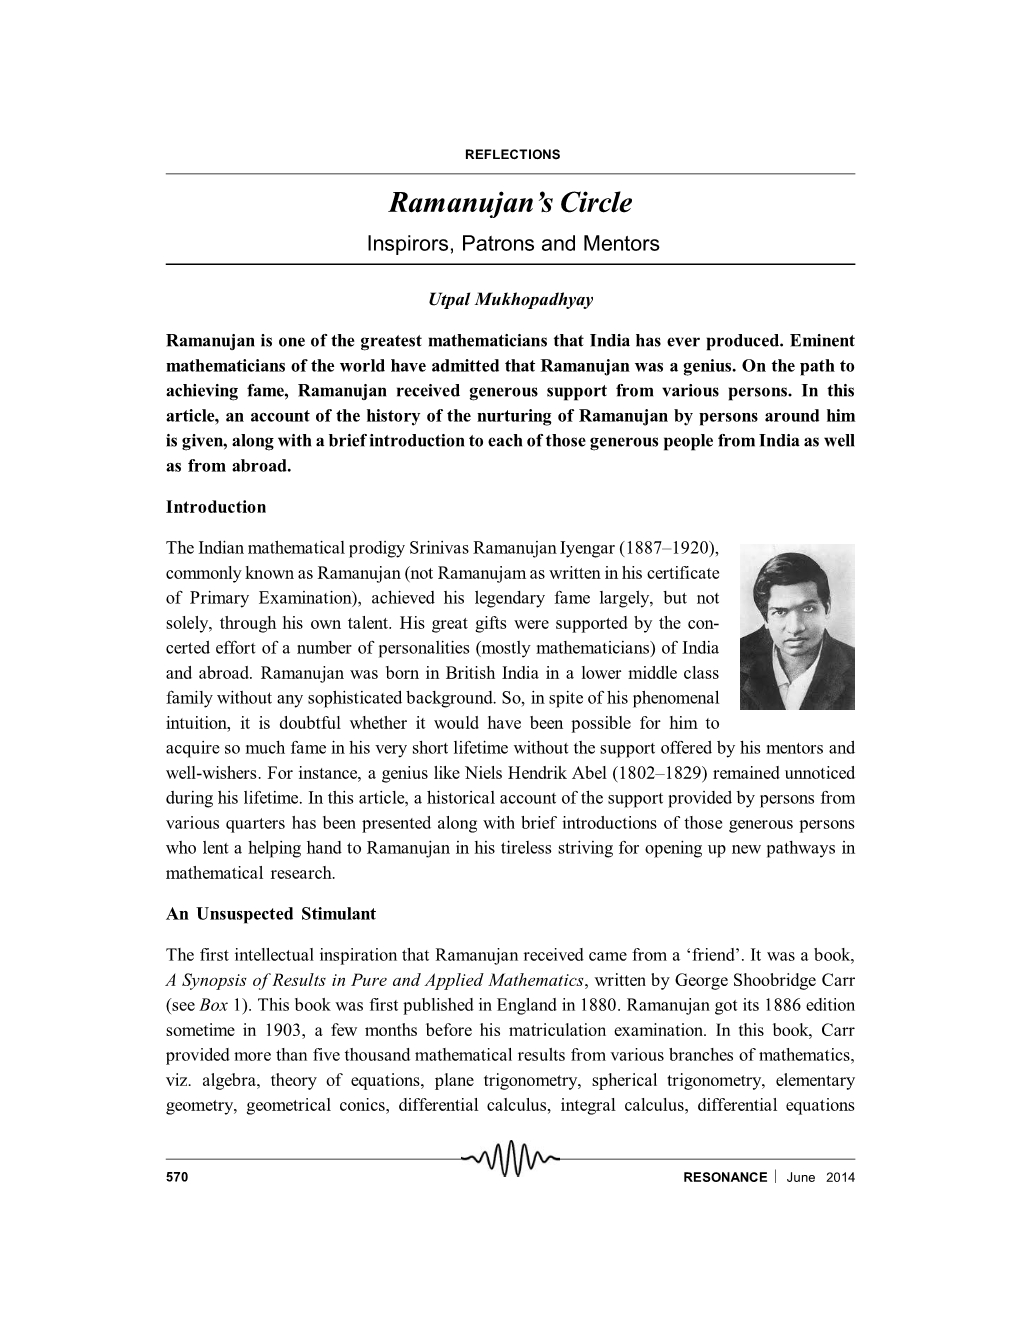 Ramanujan's Circle